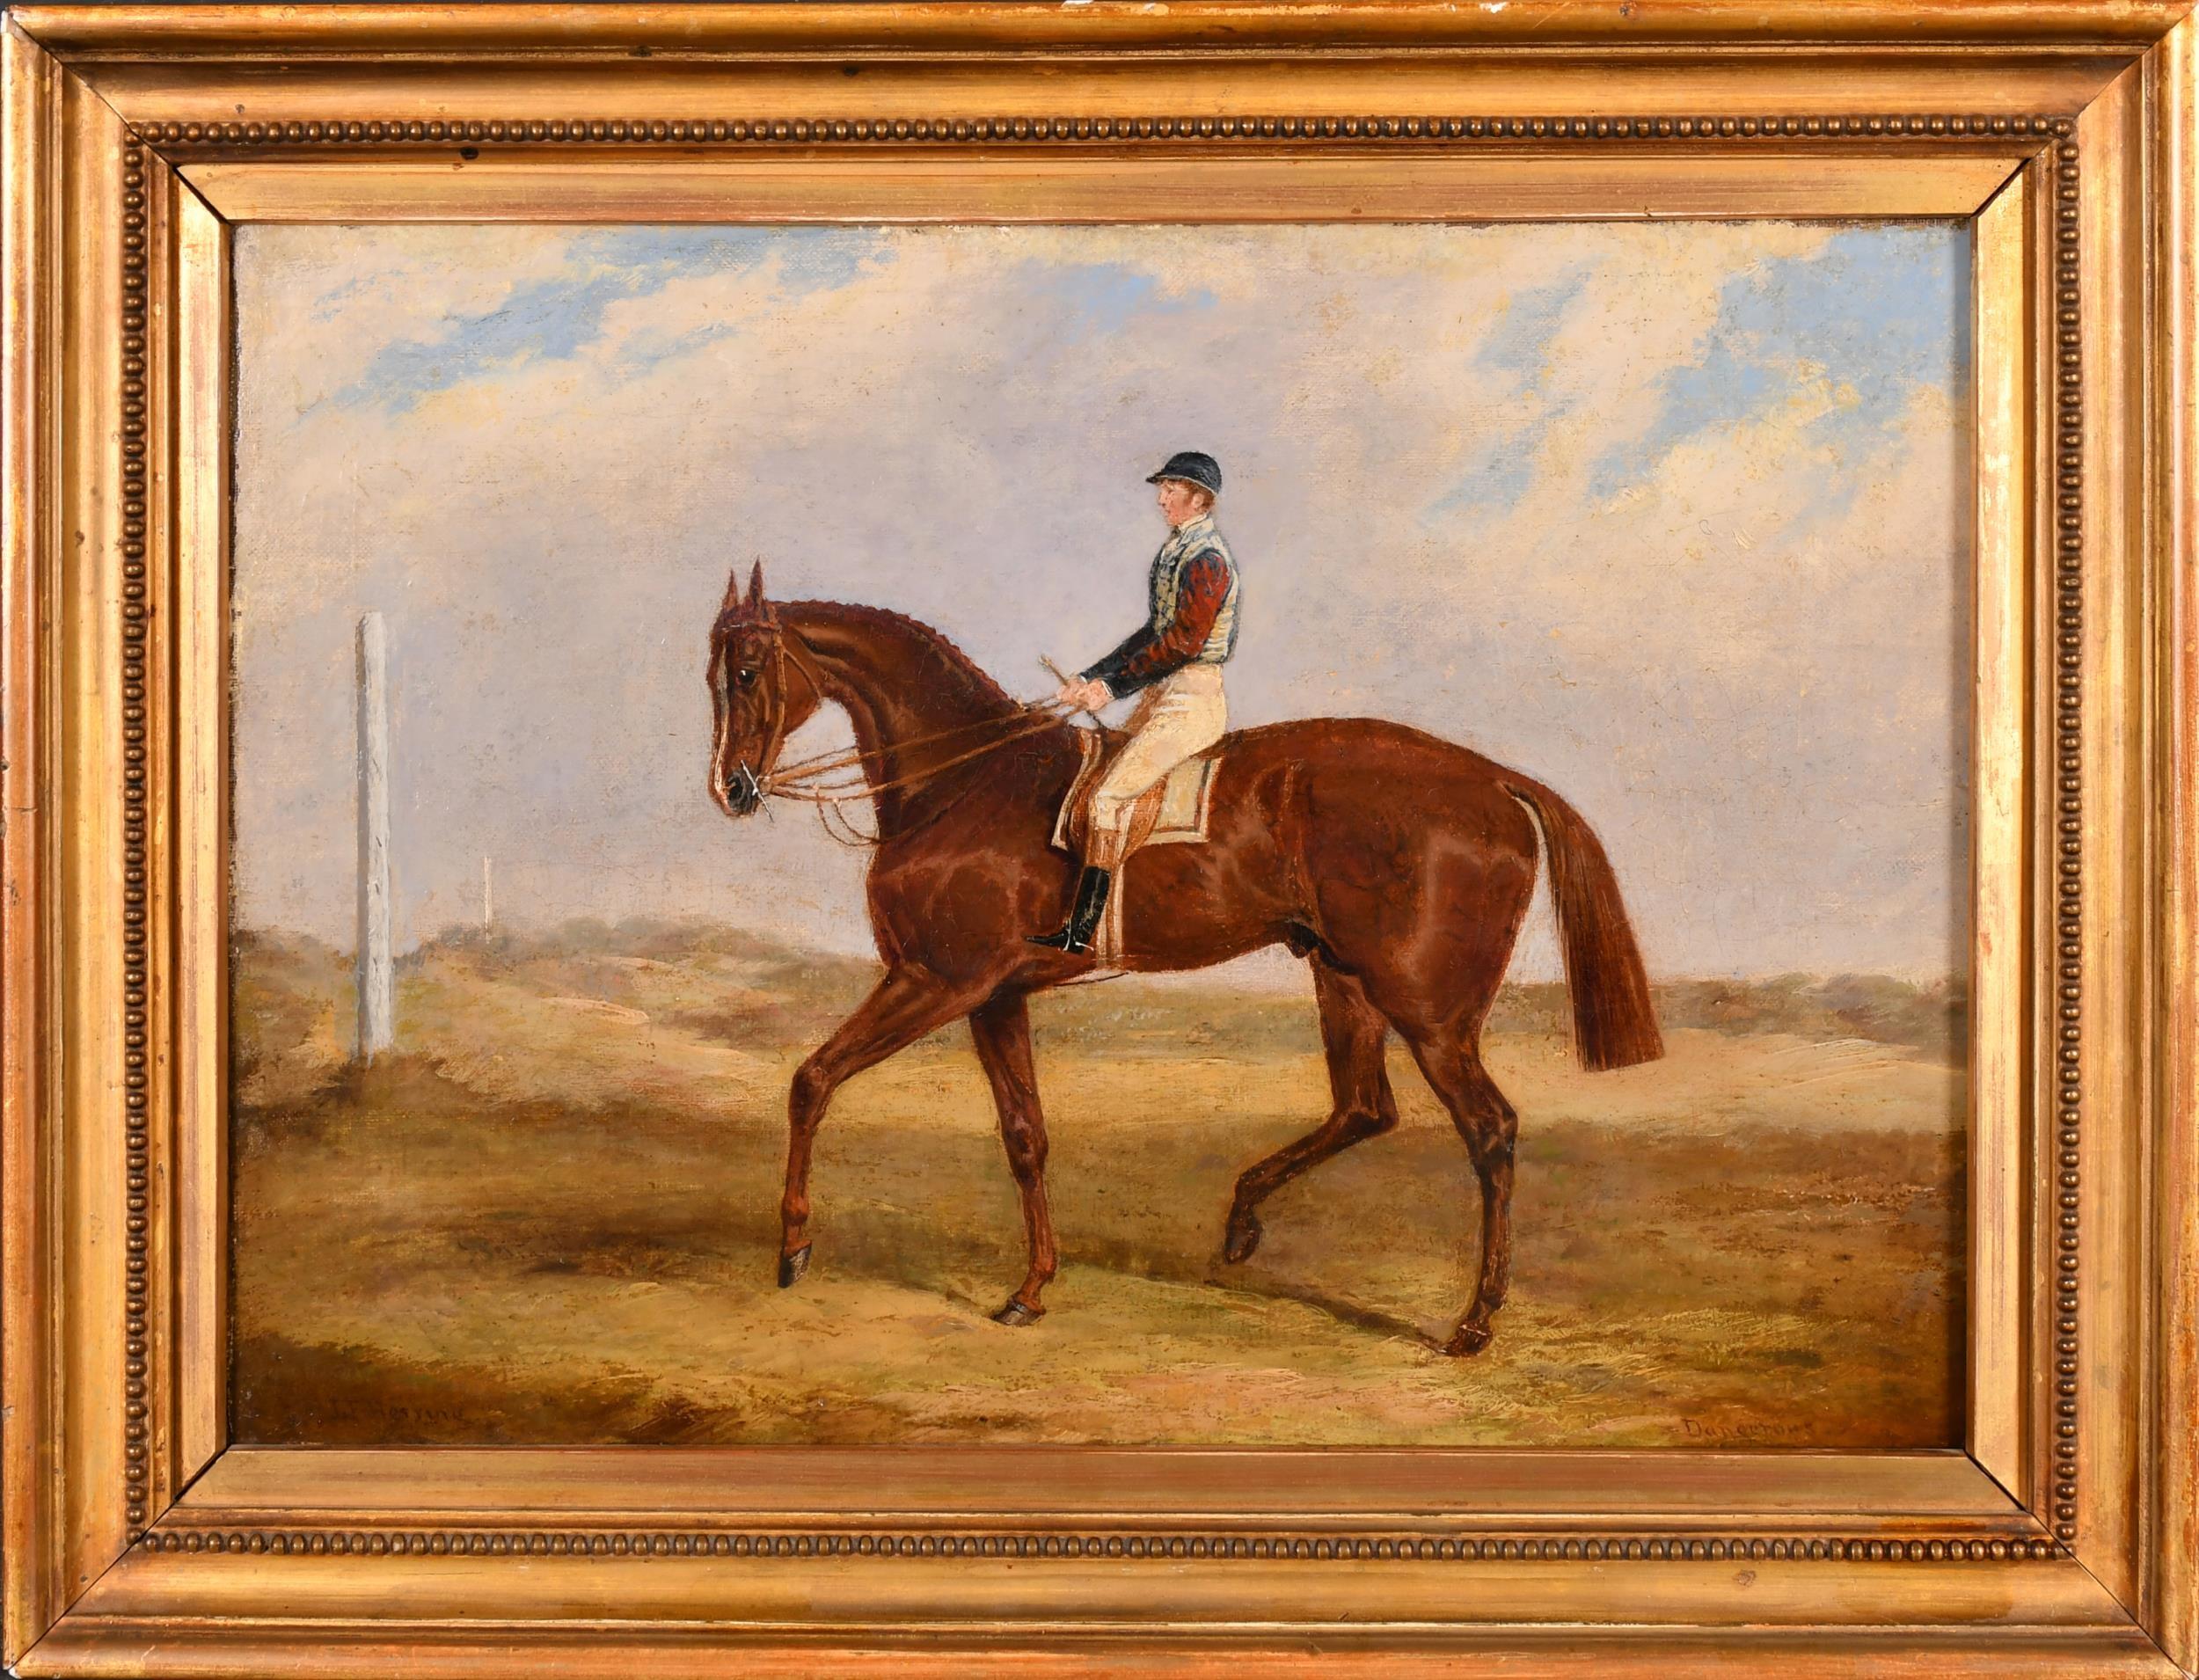 Feines Original signiertes Ölgemälde des Derby Winner Racehorse, 1830er Jahre, signiert – Painting von John Frederick Herring Sr.